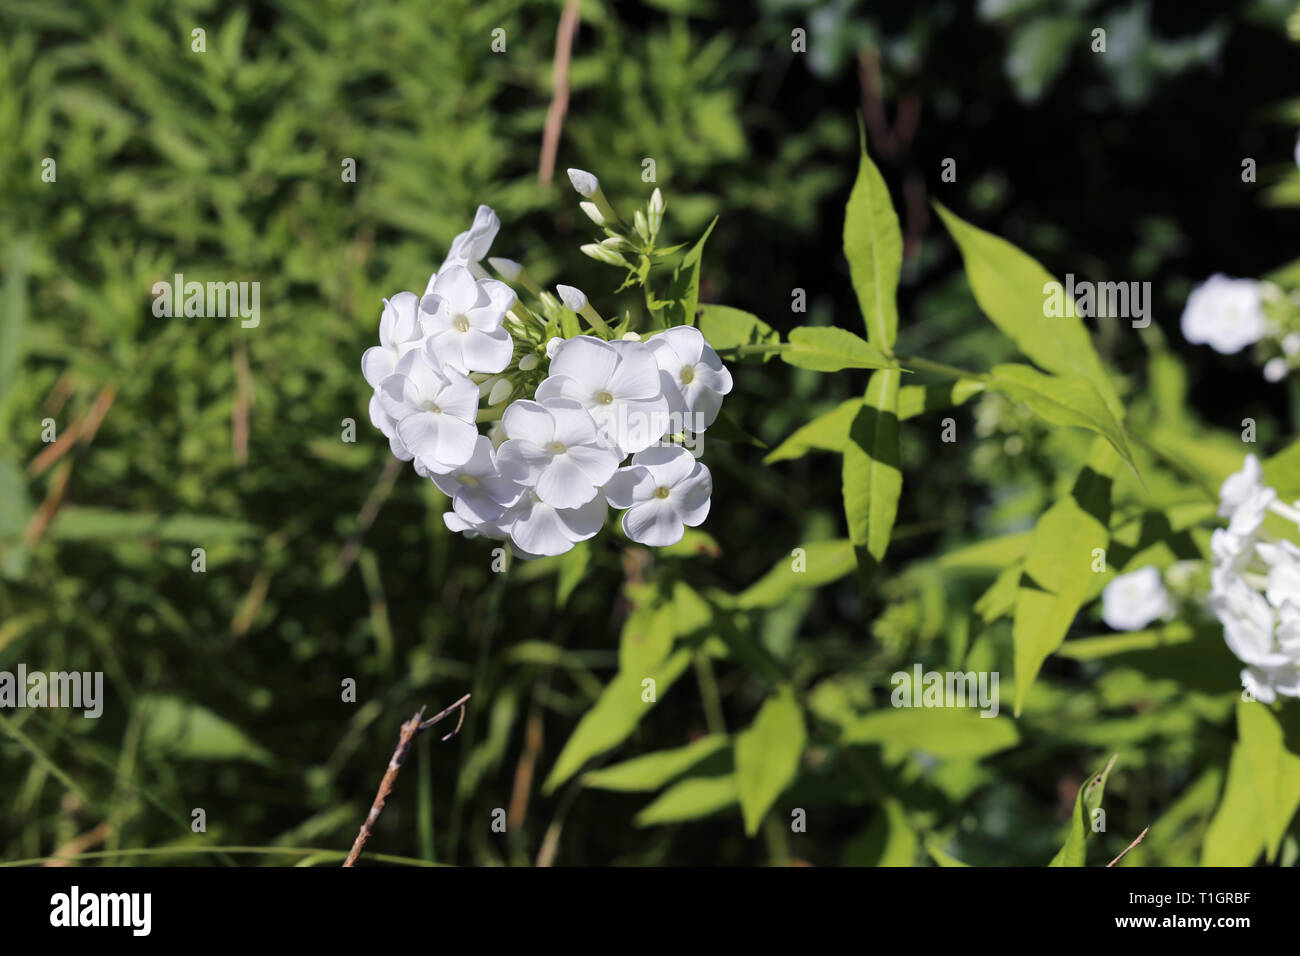 Splendida fioritura fiori bianchi con alcune foglie verdi fotografato durante una soleggiata giornata estiva. Bella fiori freschi rappresentano la bellezza della natura. Foto Stock